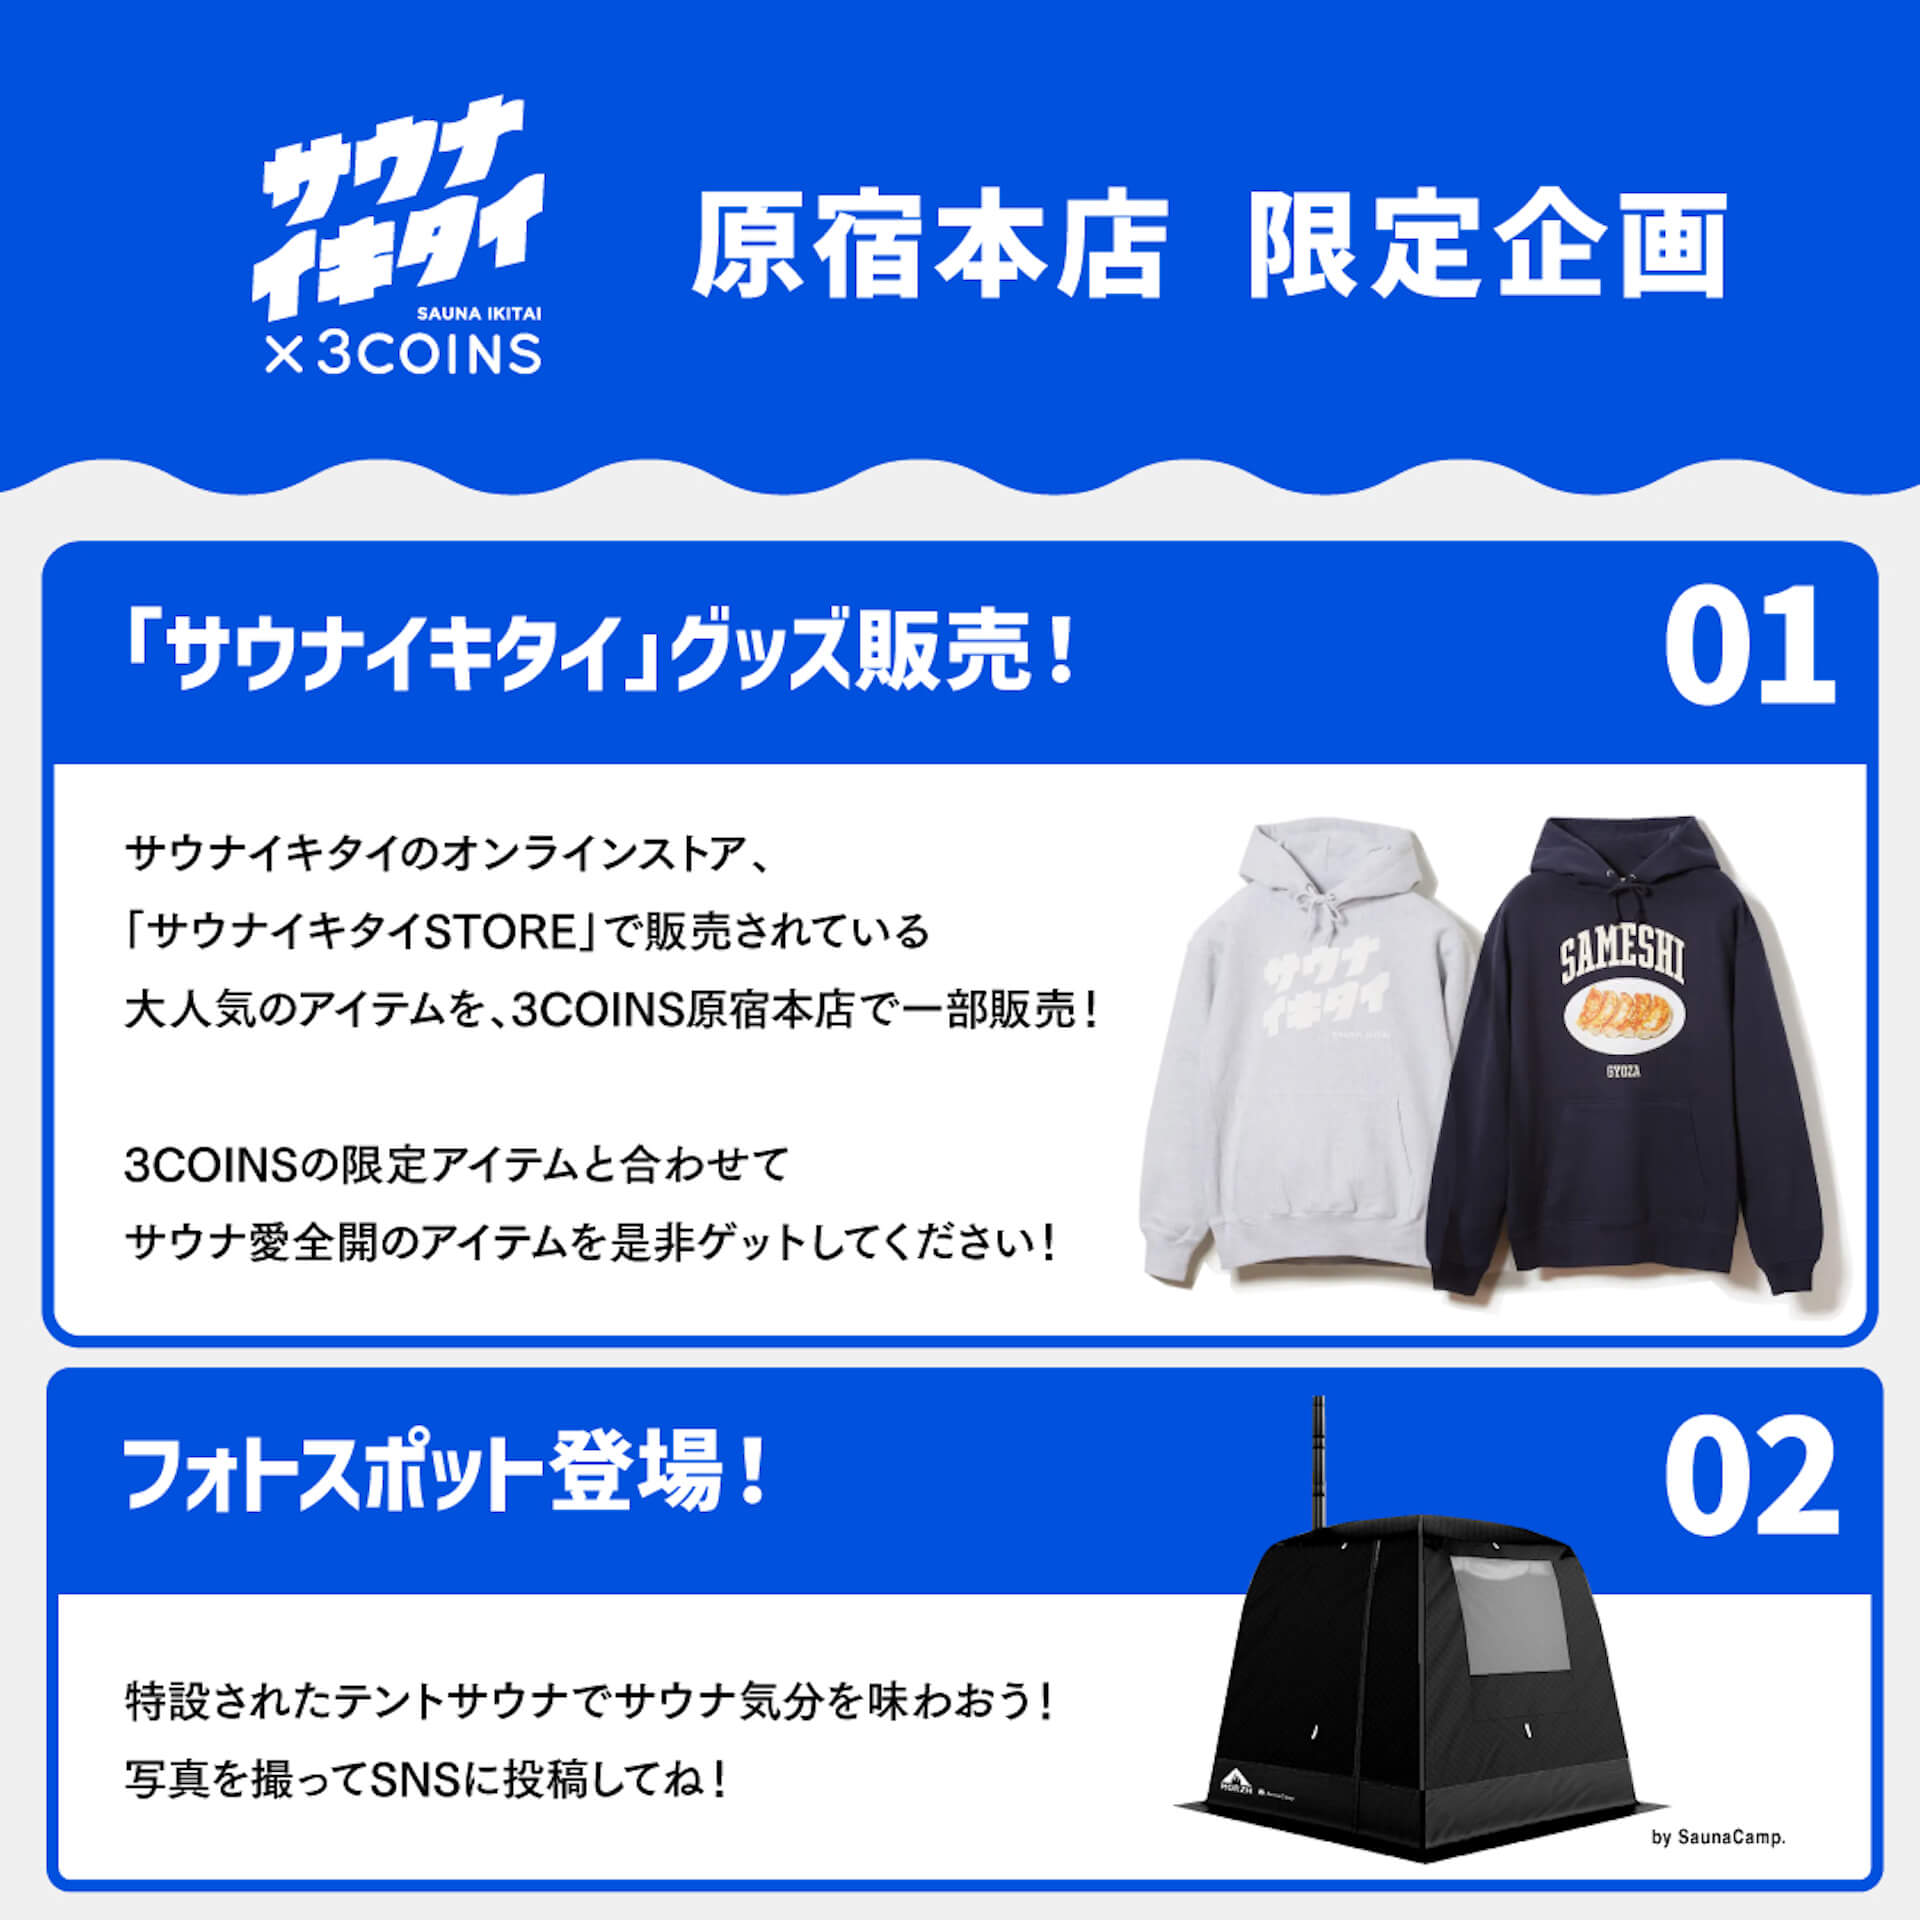 “サウナイキタイ×3COINS”タッグを組んだサウナグッズが発売決定！ fashion221025-sauna-ikitai-08